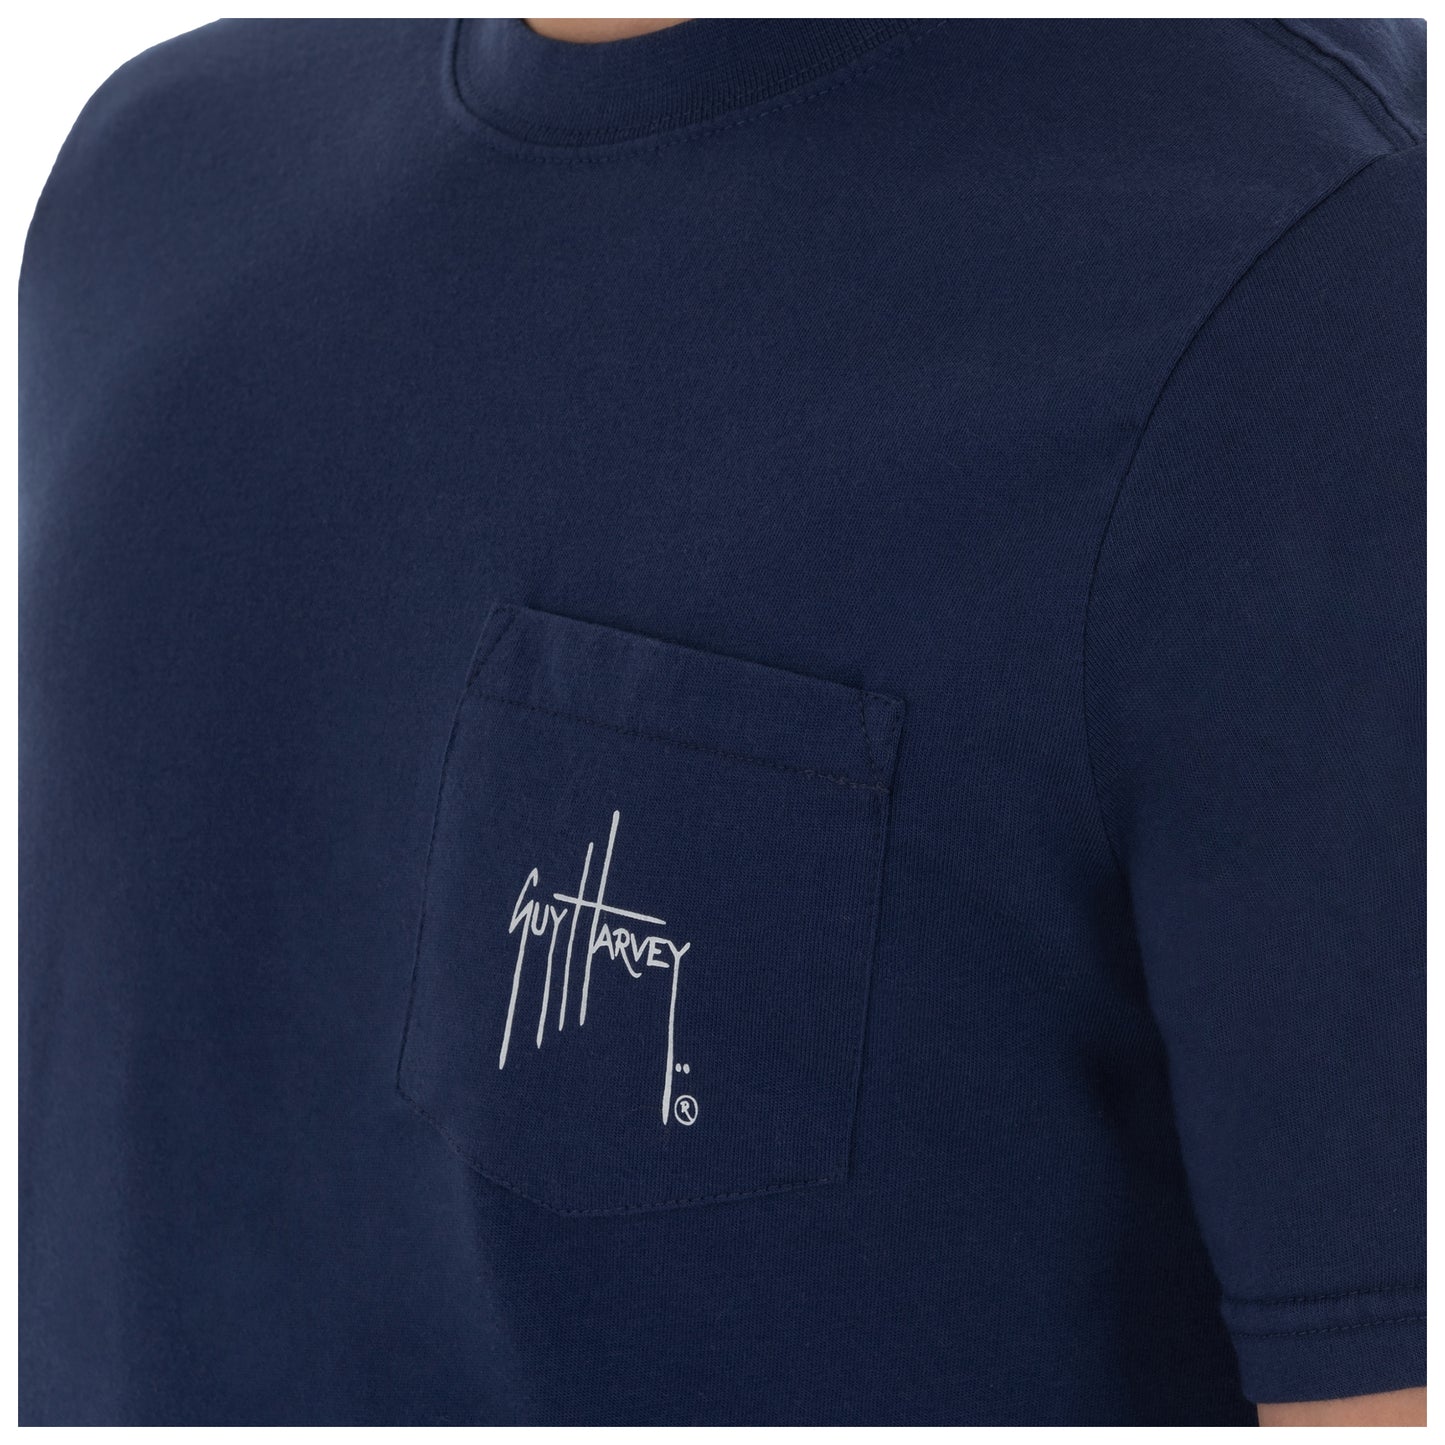 Men's Blue And Bertram Short Sleeve Pocket Navy T-Shirt View 2